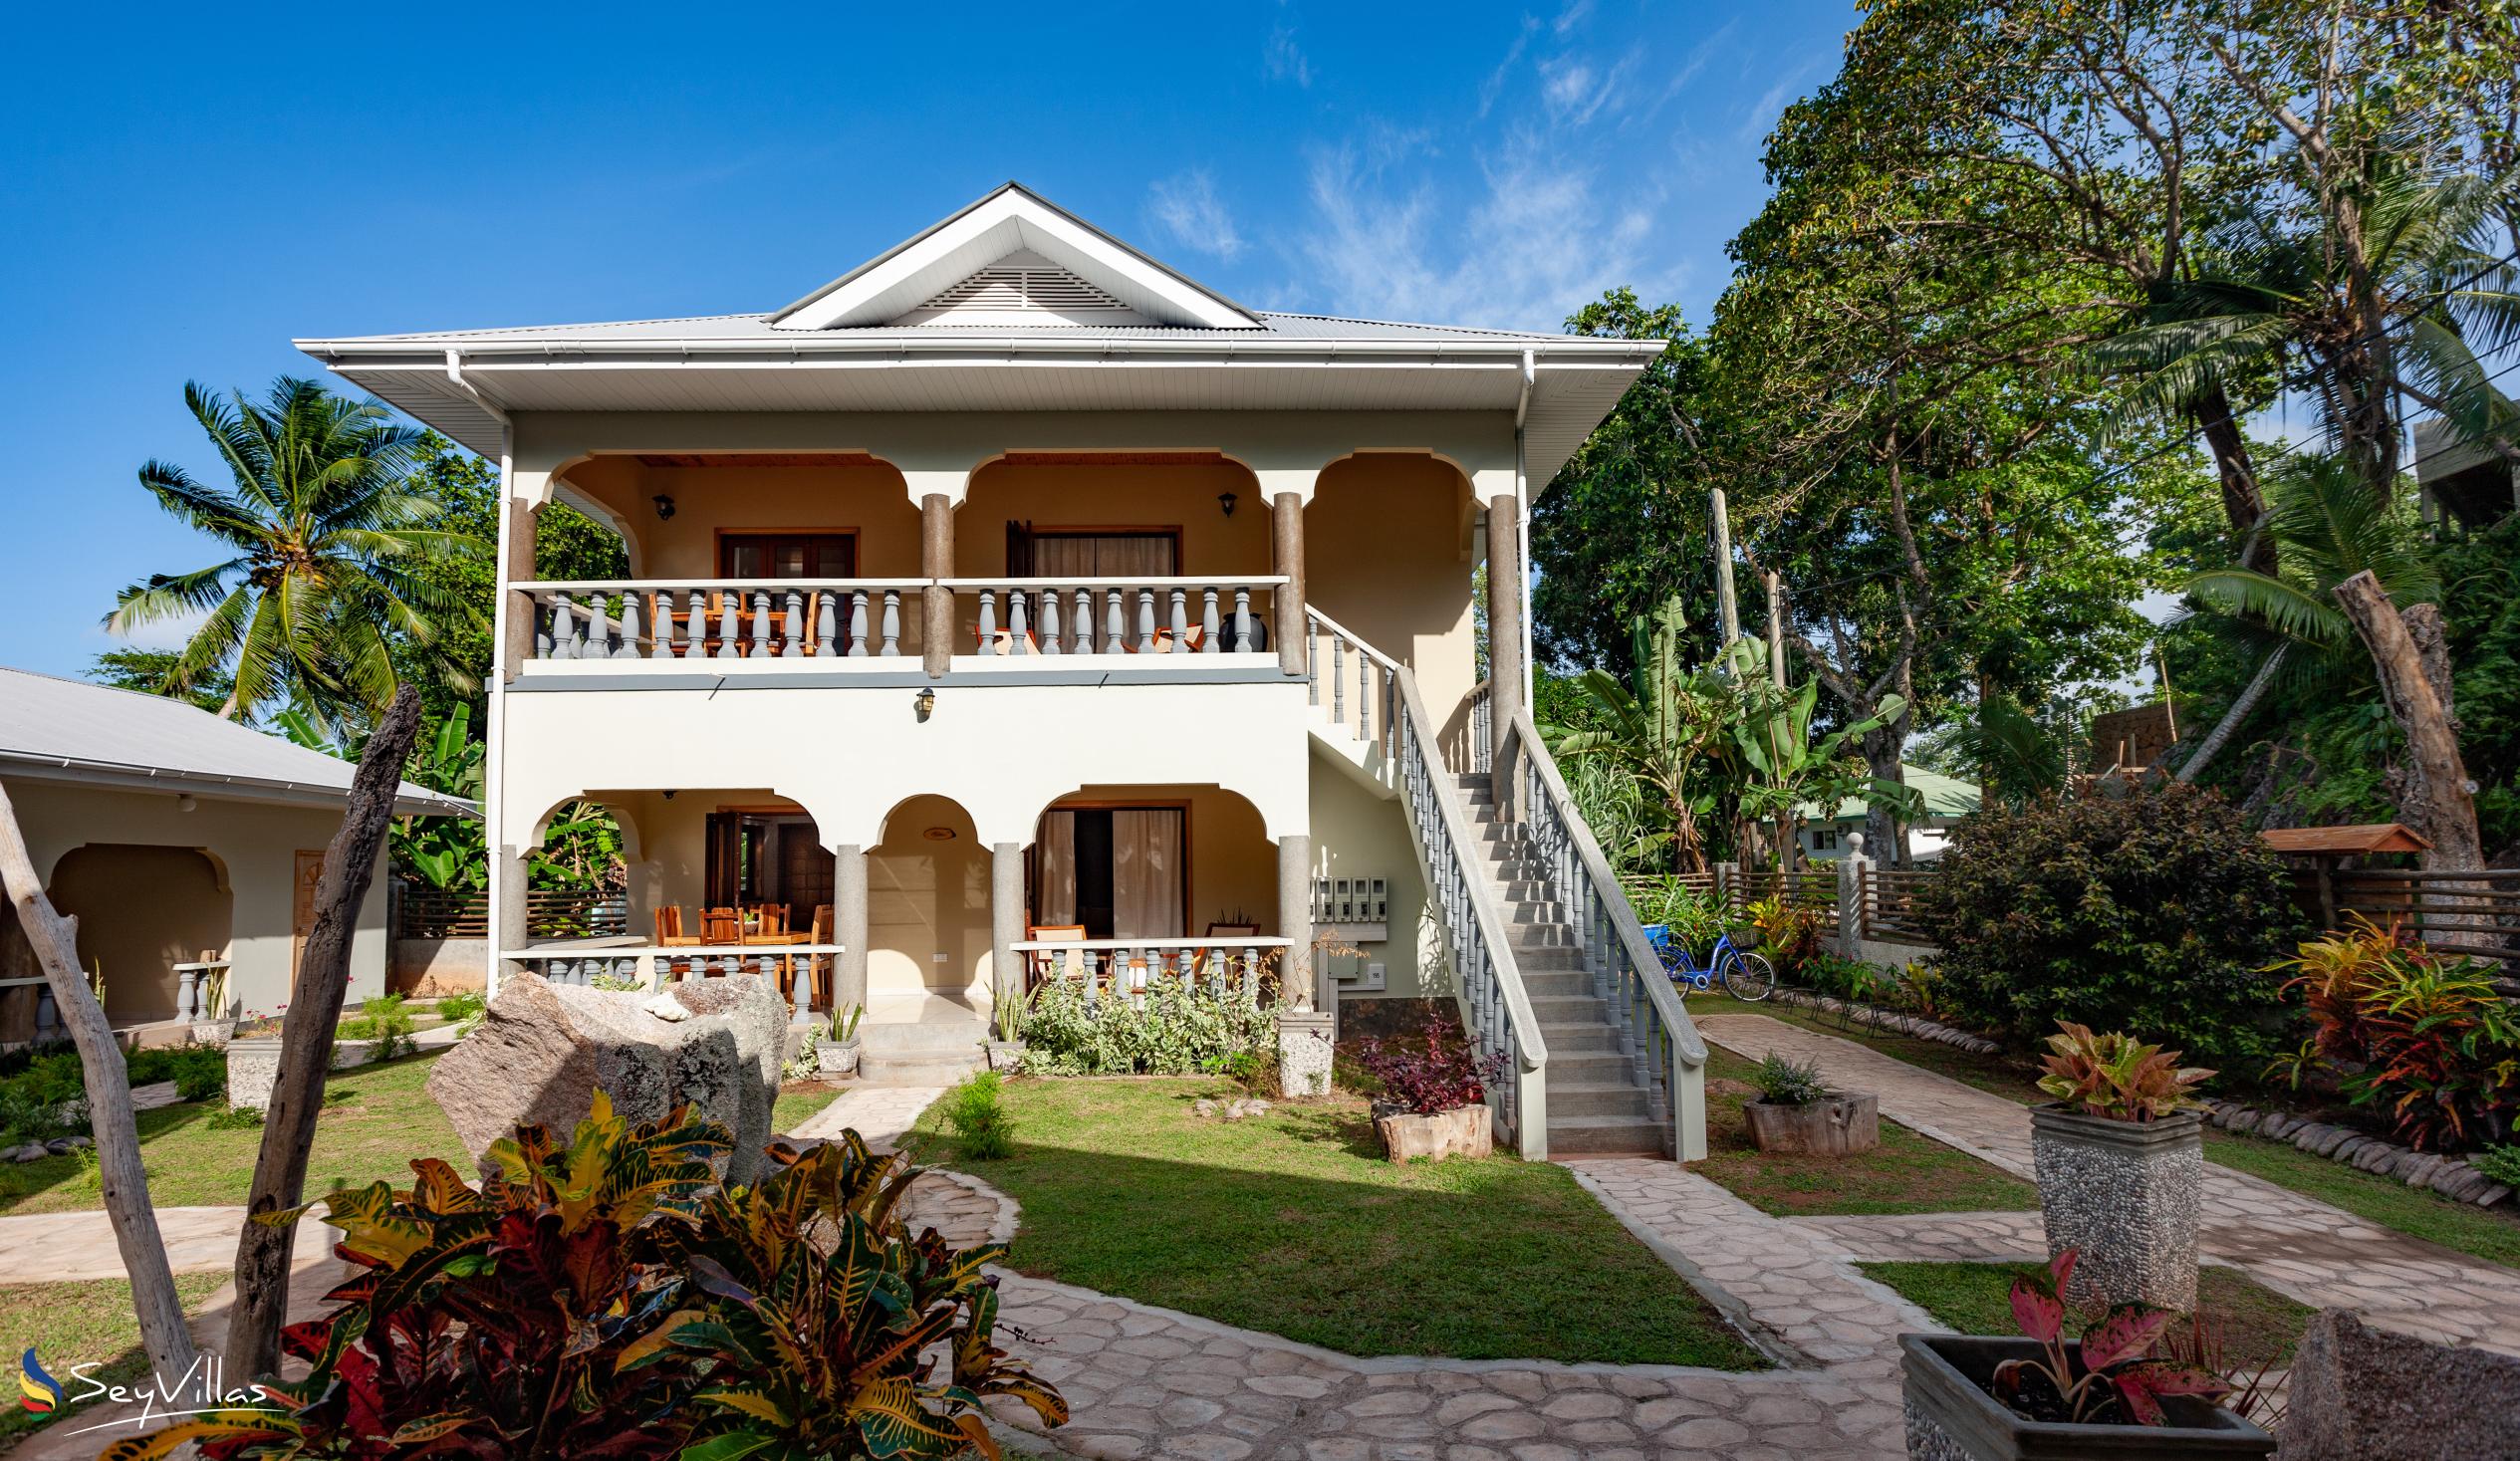 Photo 1: Maison Ed-Elle - Outdoor area - La Digue (Seychelles)